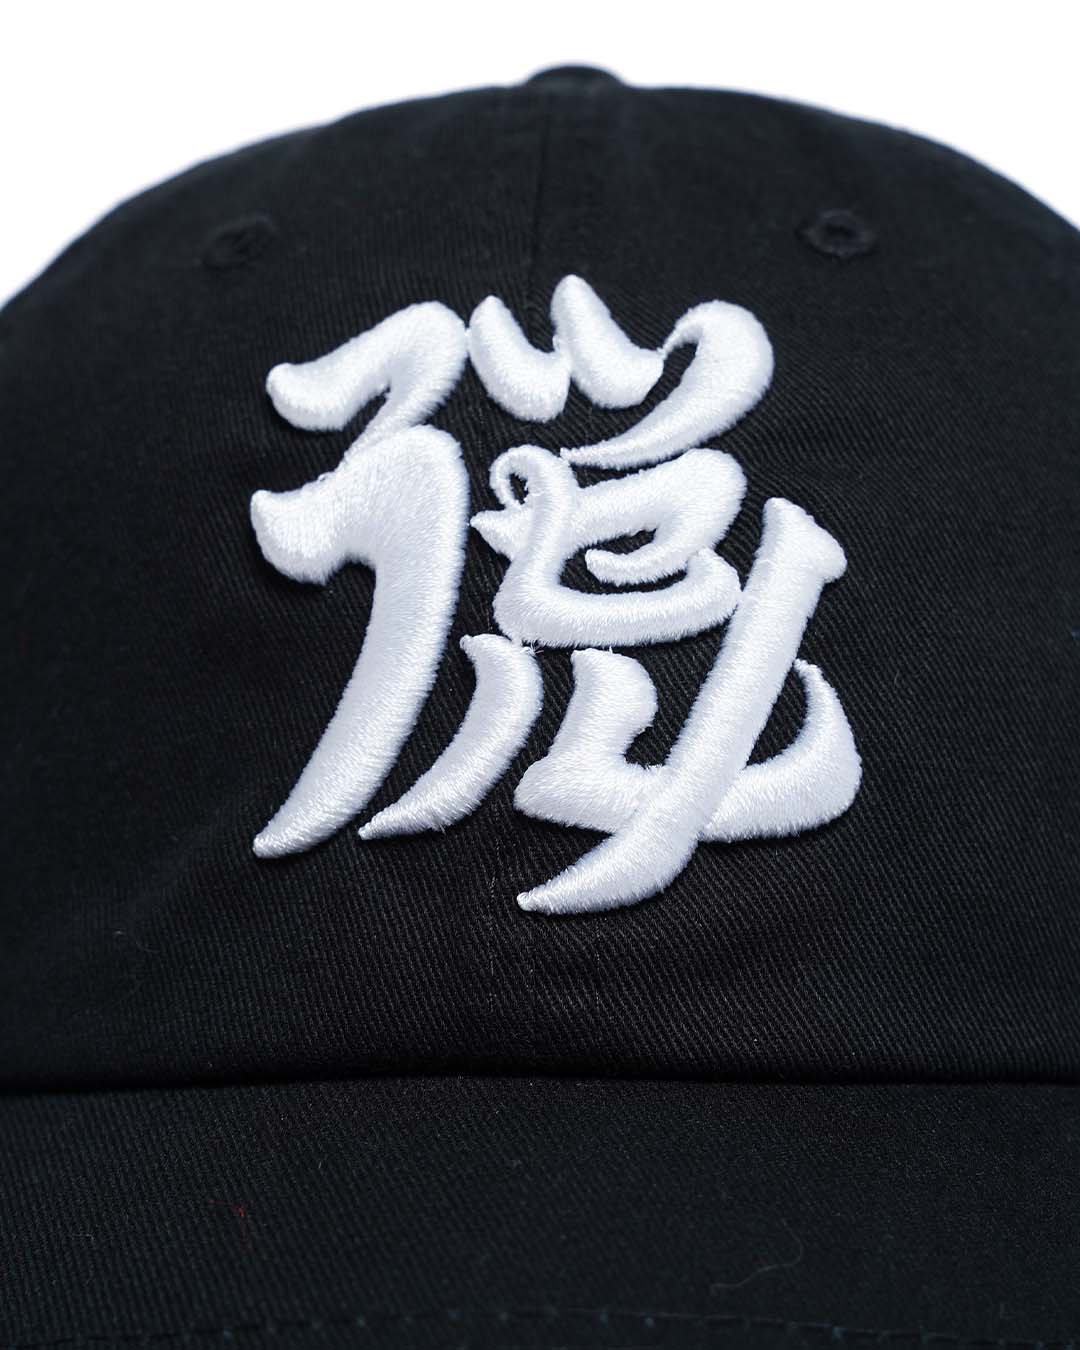 Parece Kanji Cap